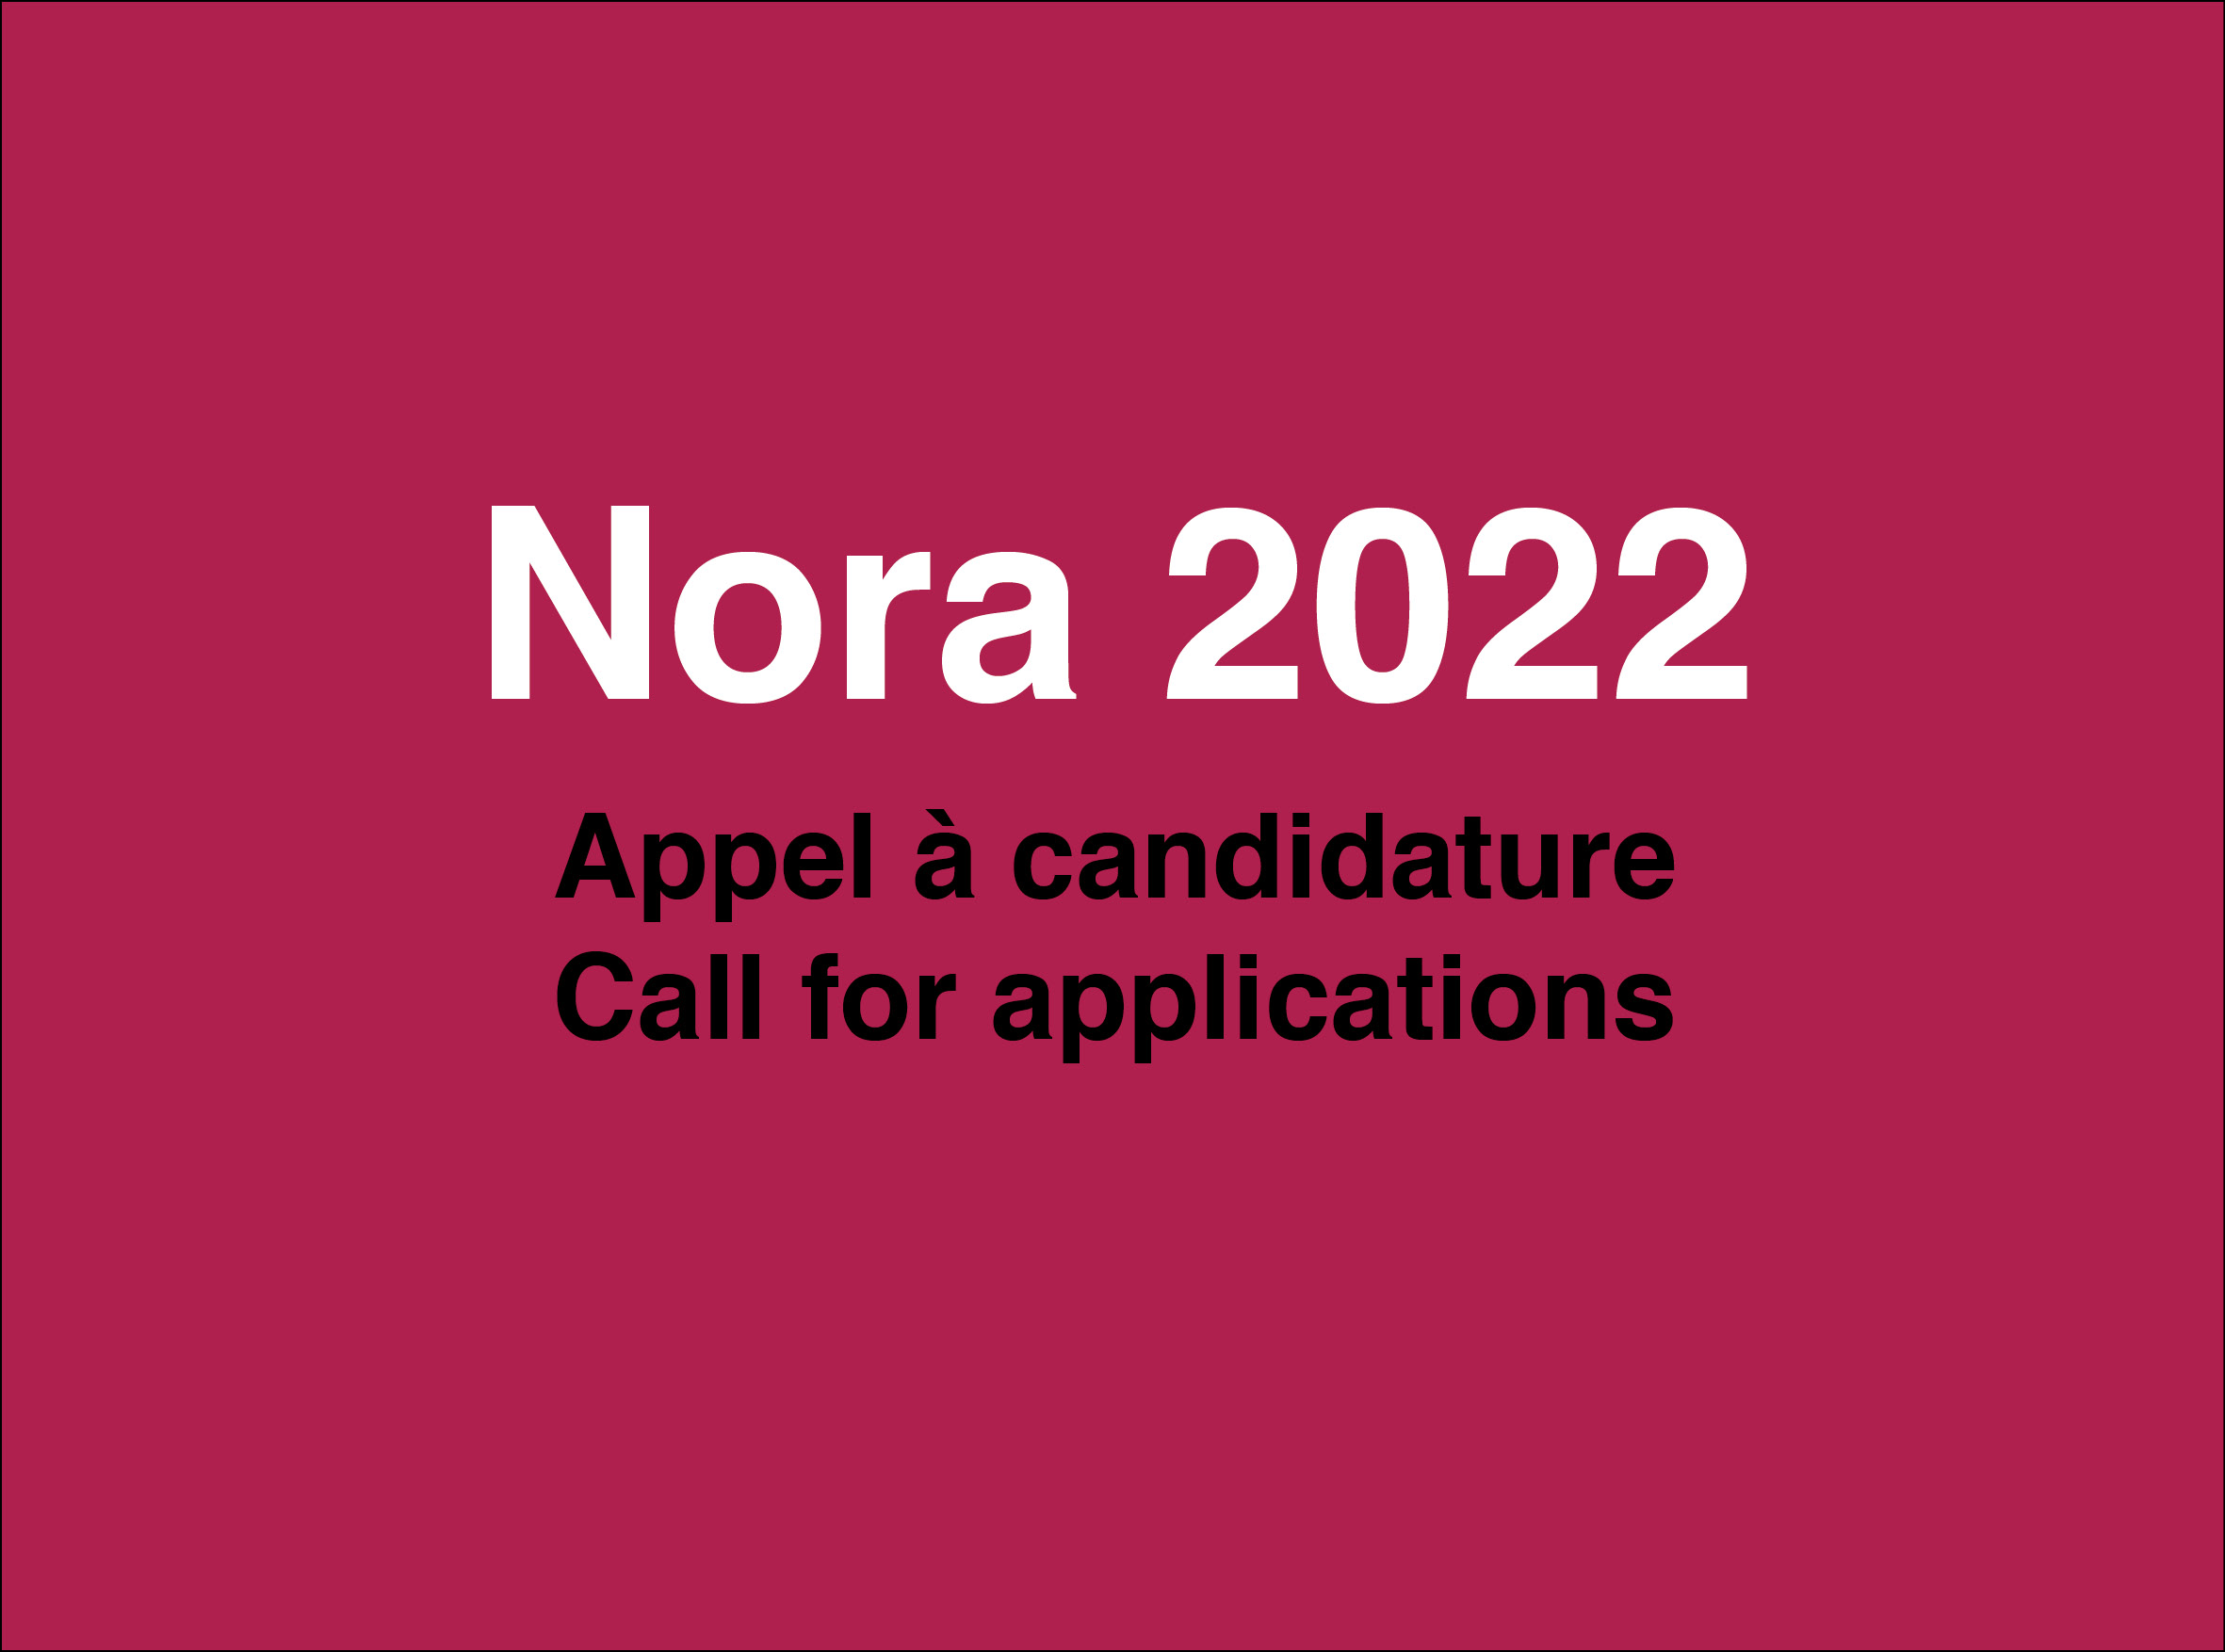 Programme Nora - Appel à candidature 2022